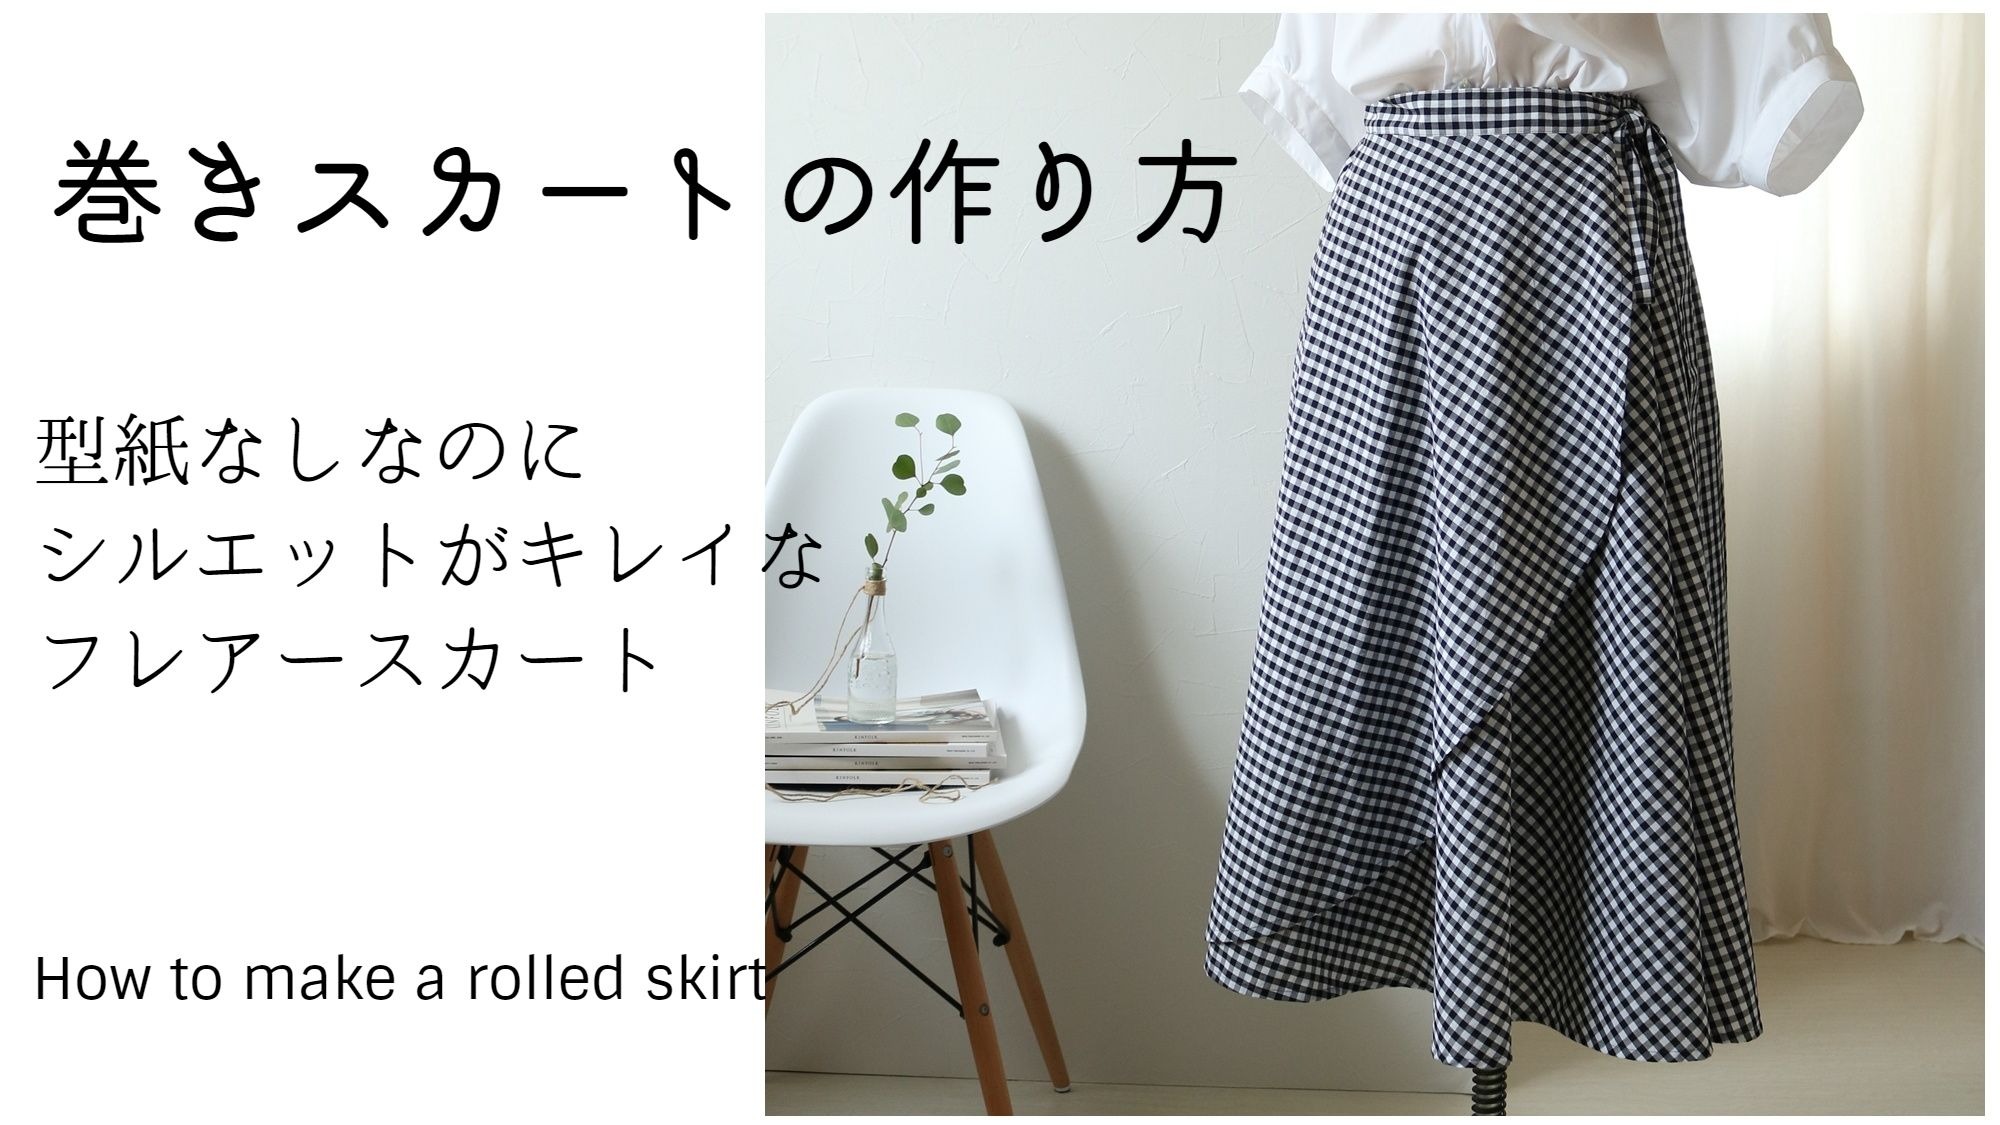 巻きスカート風ギャザースカートの作り方 洋裁好きさんのための洋裁ブログ